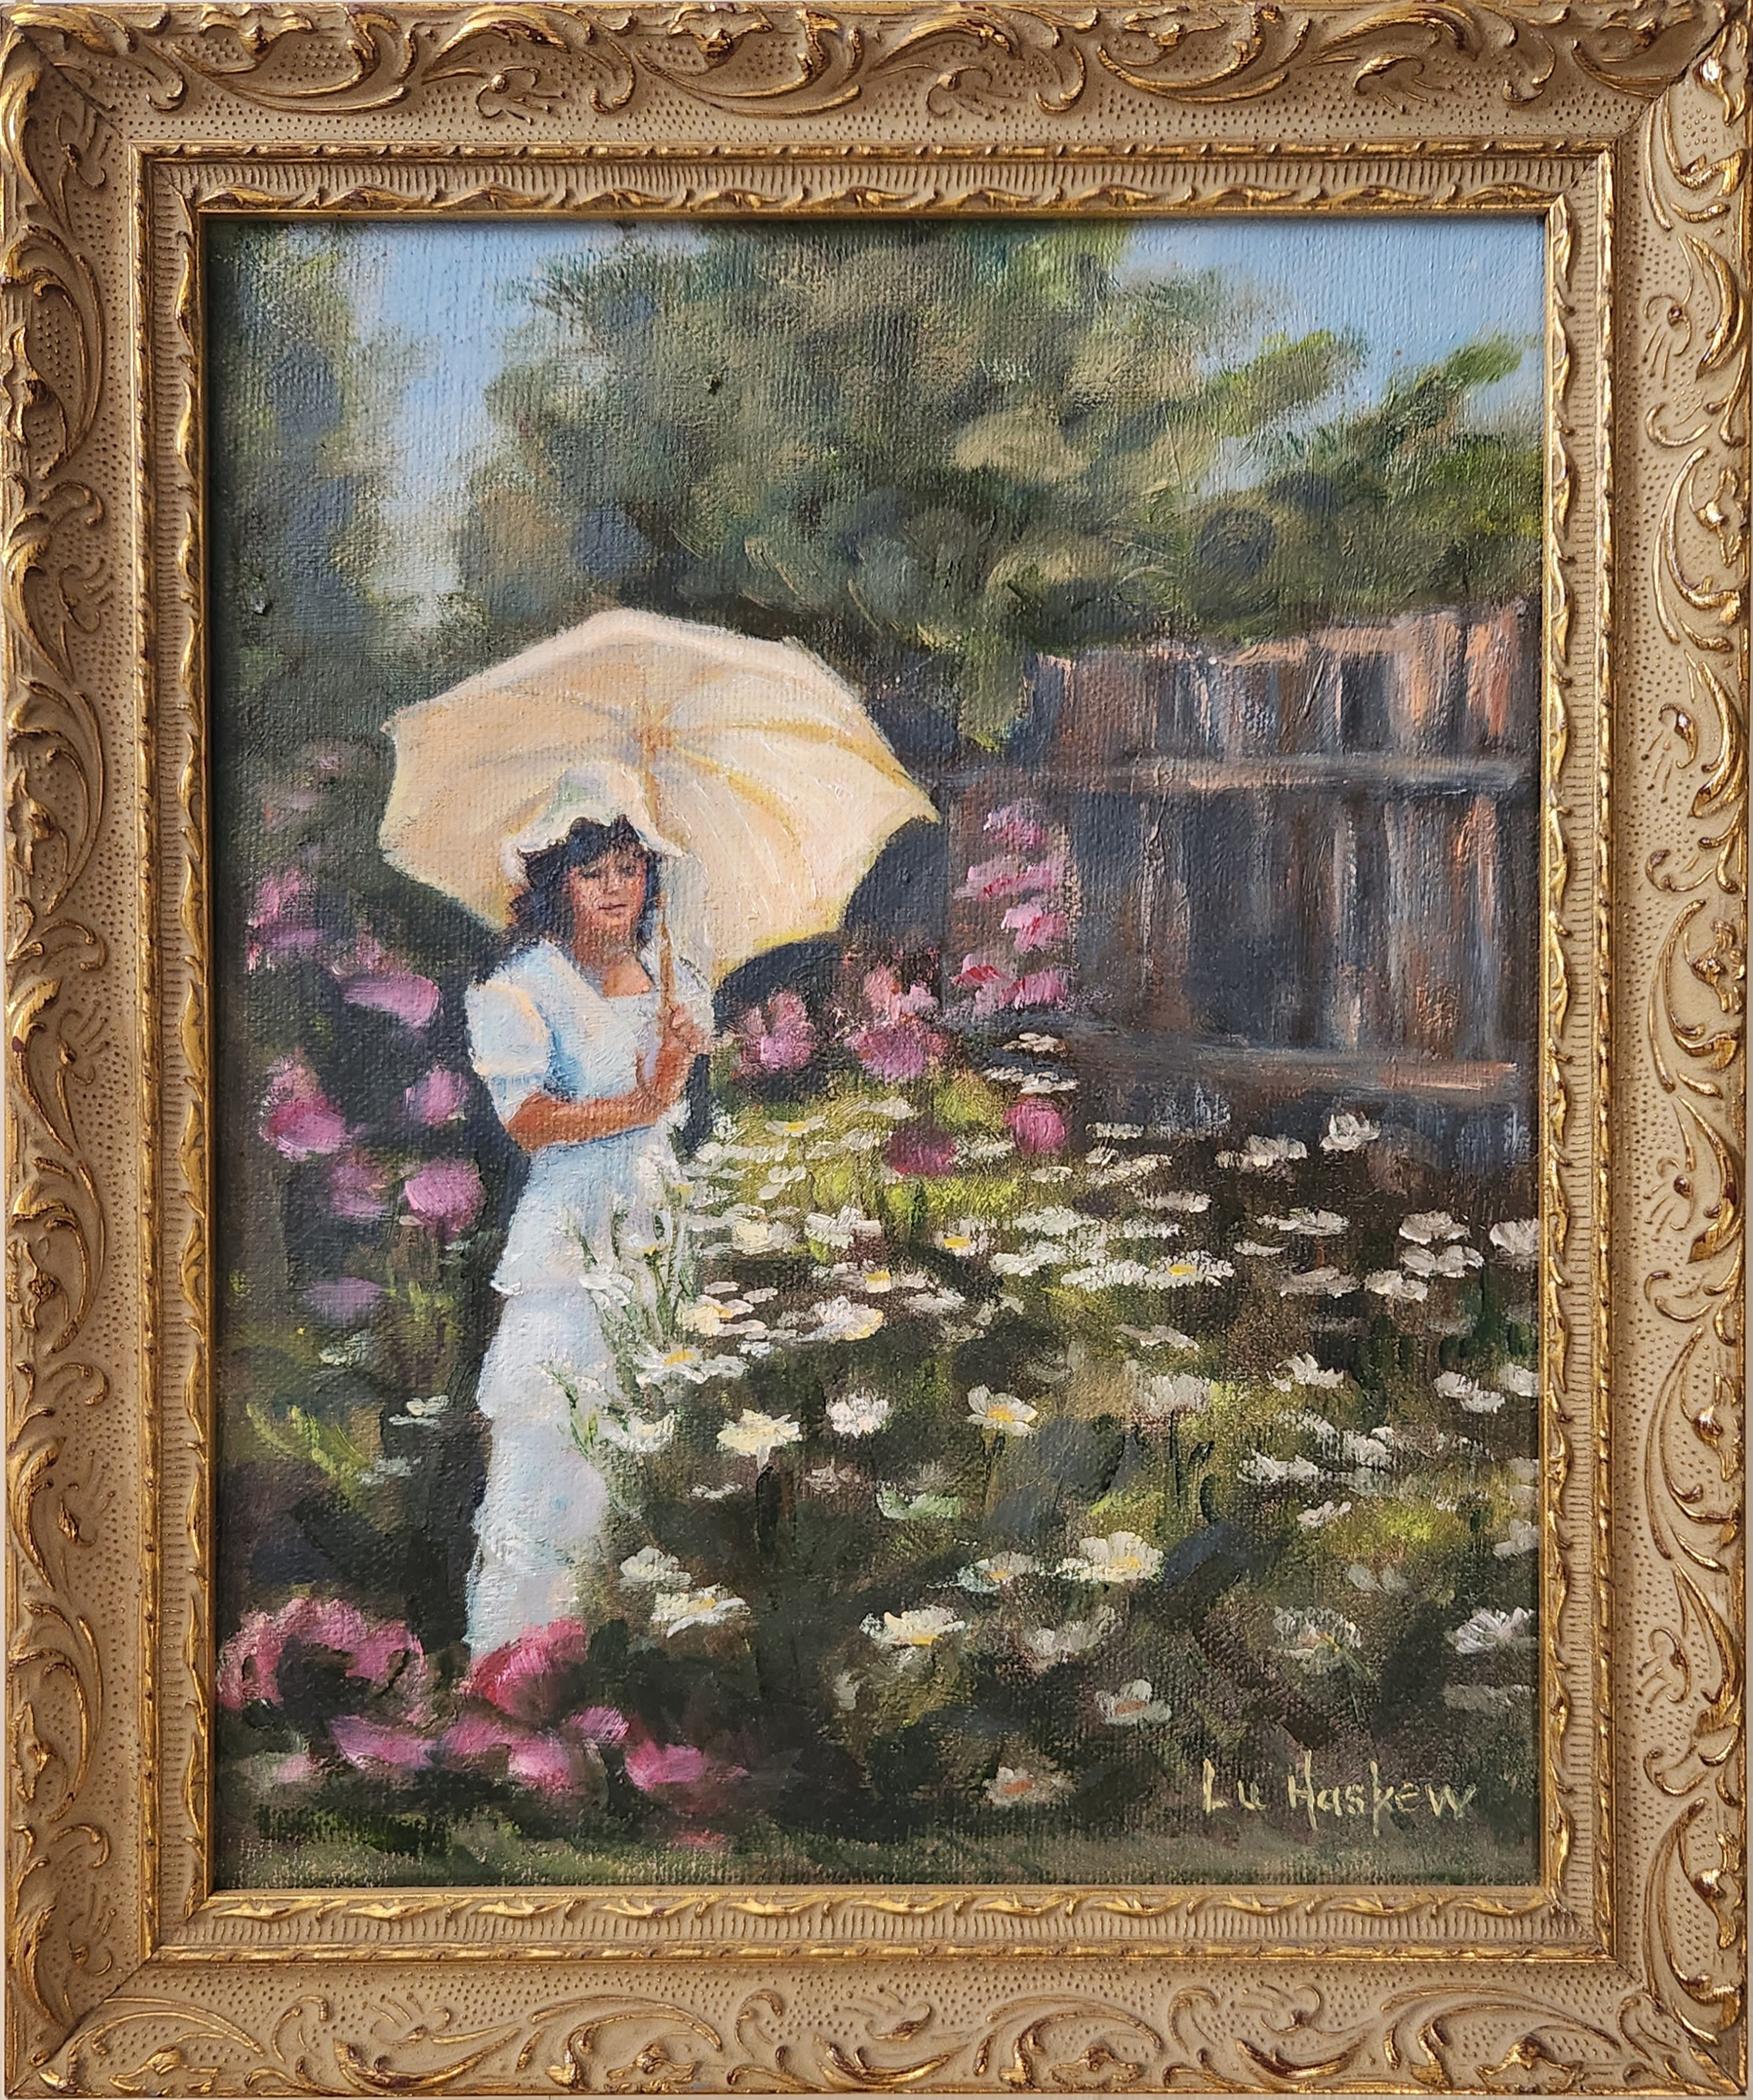 Lu Haskew Landscape Painting - In the Garden, 10x8" oil on board